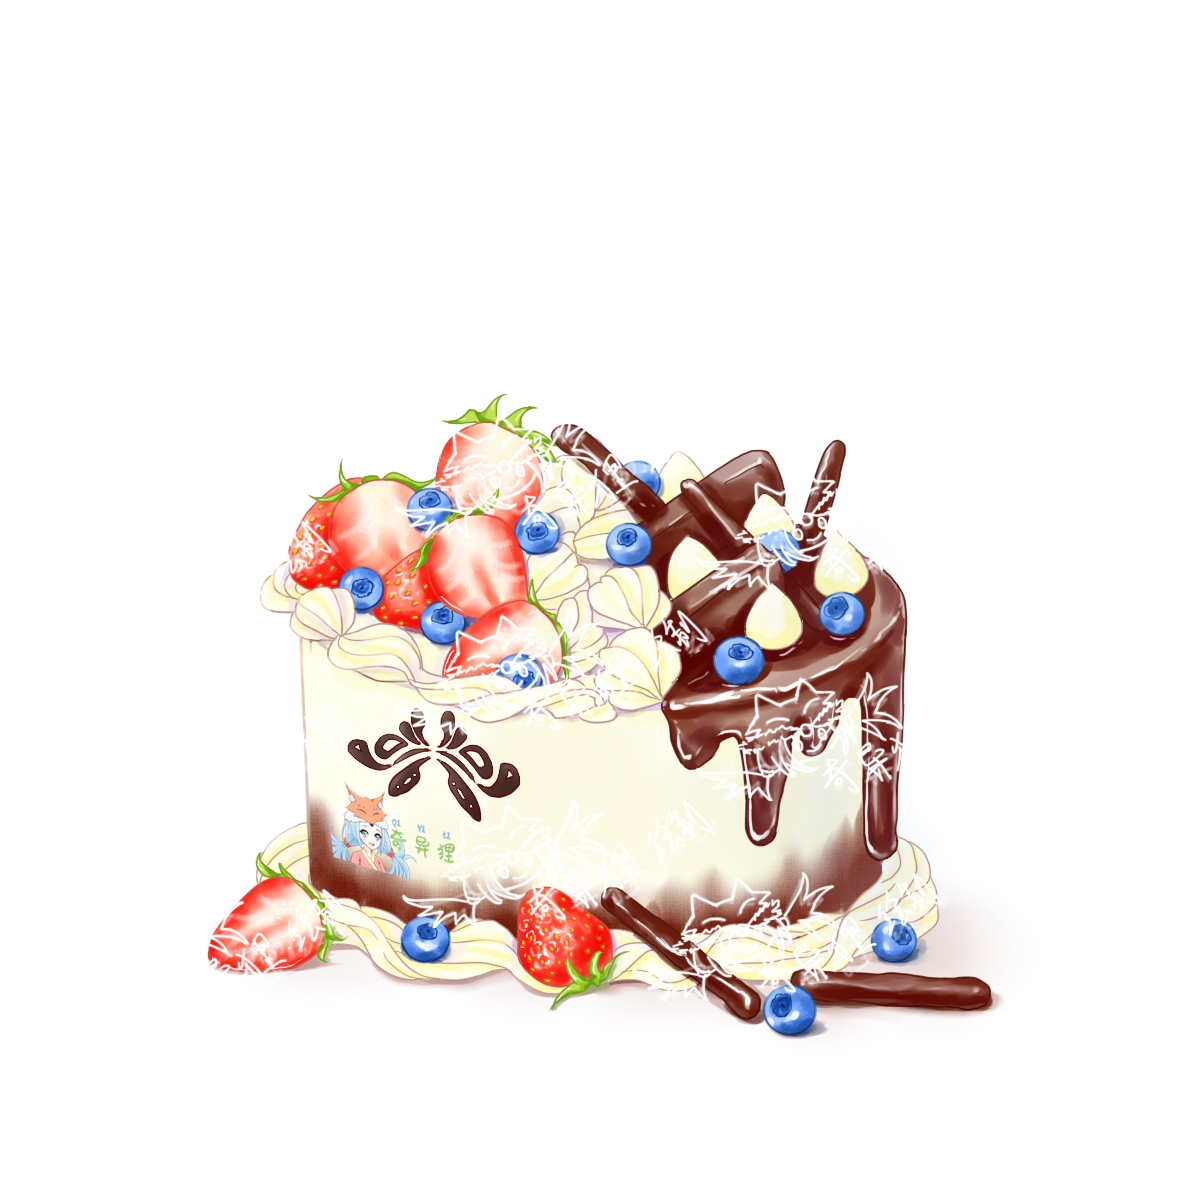 草莓巧克力双拼生贺蛋糕插画图片壁纸